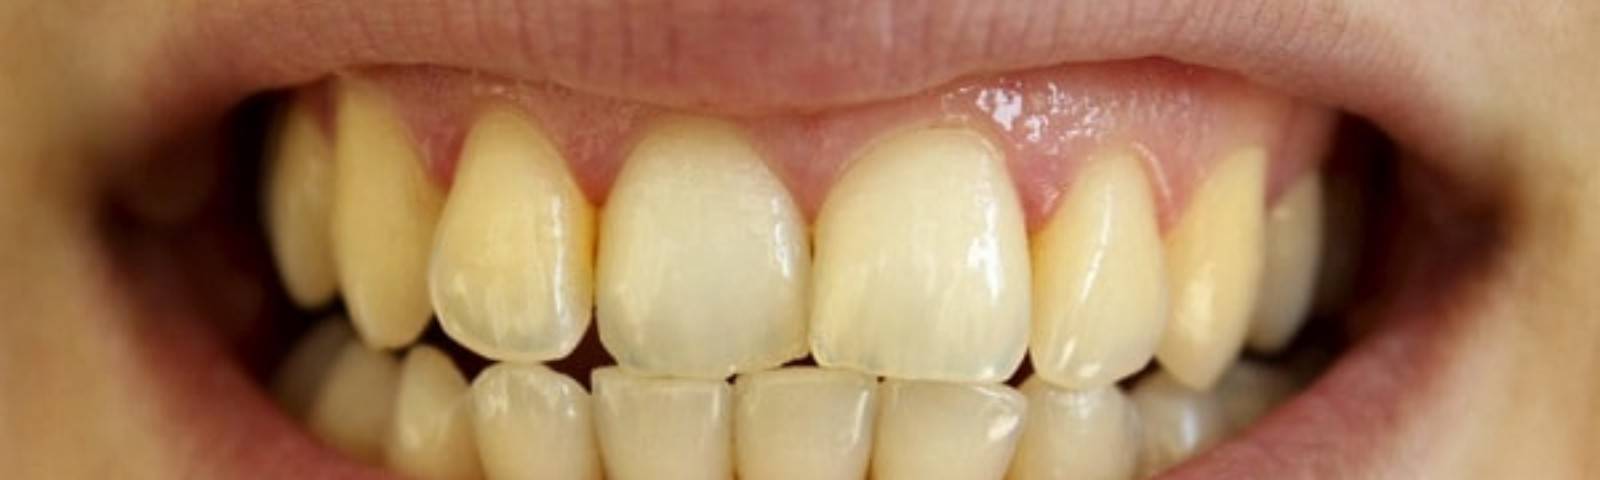 Виды зубного налёта и способы его удаления